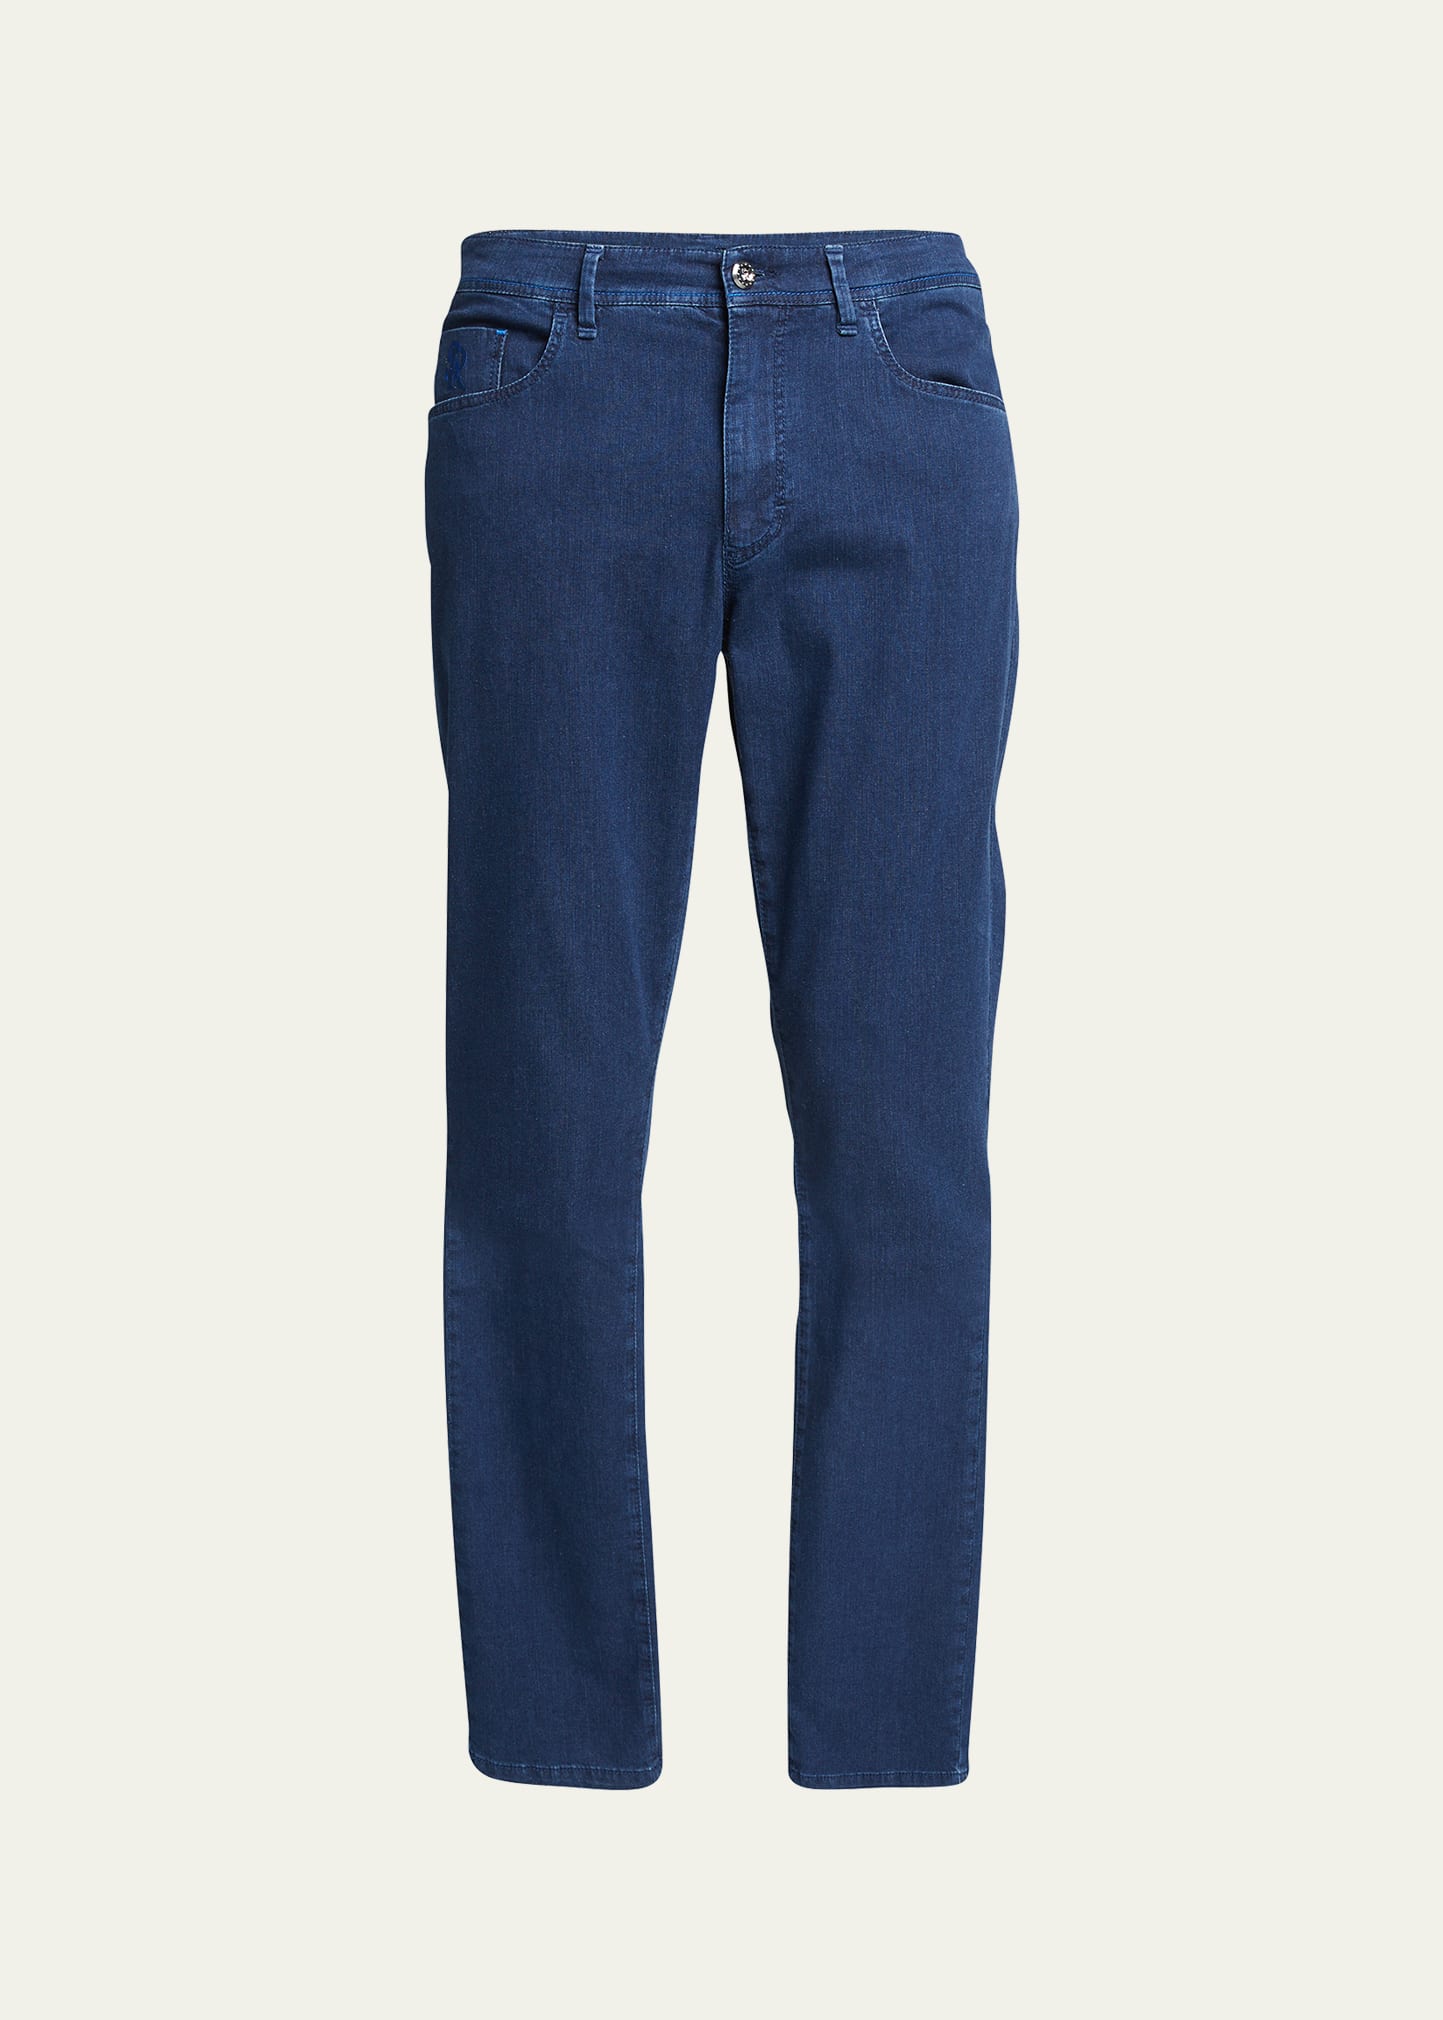 Men's Five-Pocket Medium-Wash Denim Jeans